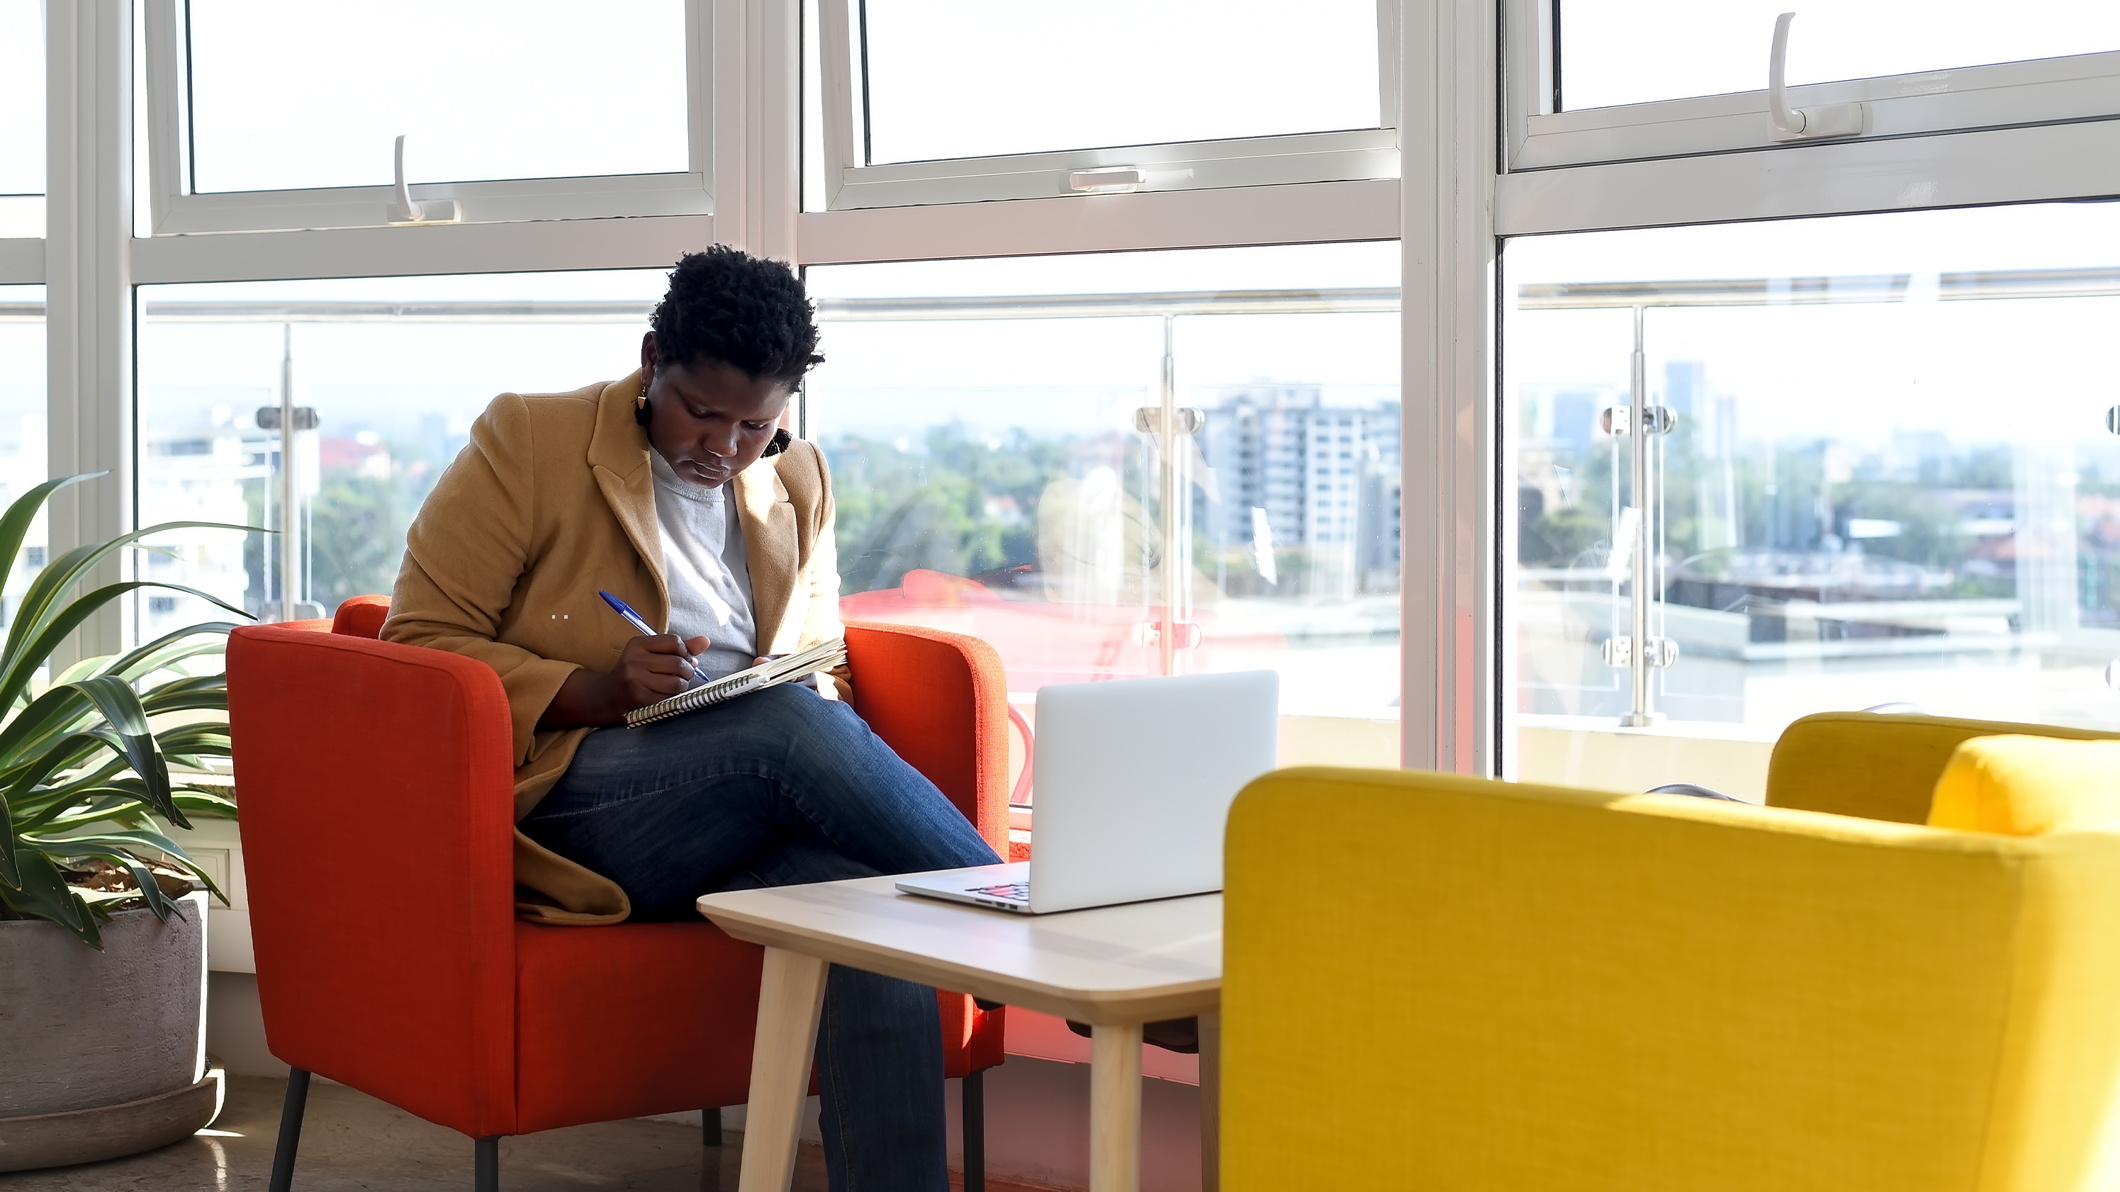 Una mujer toma notas sentada con su equipo portátil en una oficina moderna.